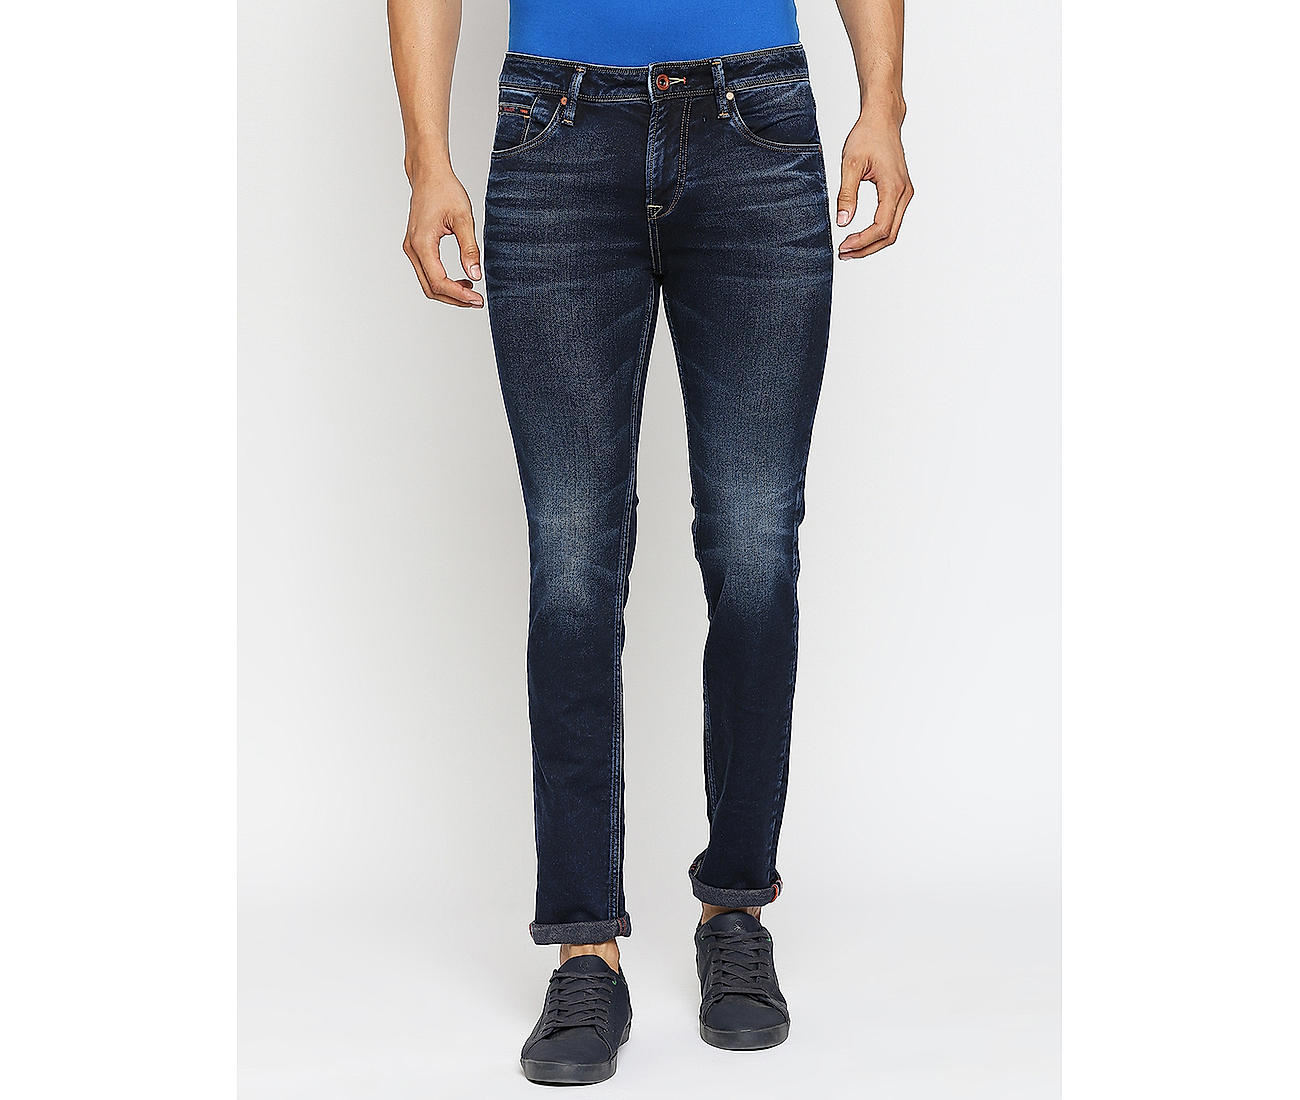 Buy Blue Colour Men Slim Fit Stretchable Jeans Online